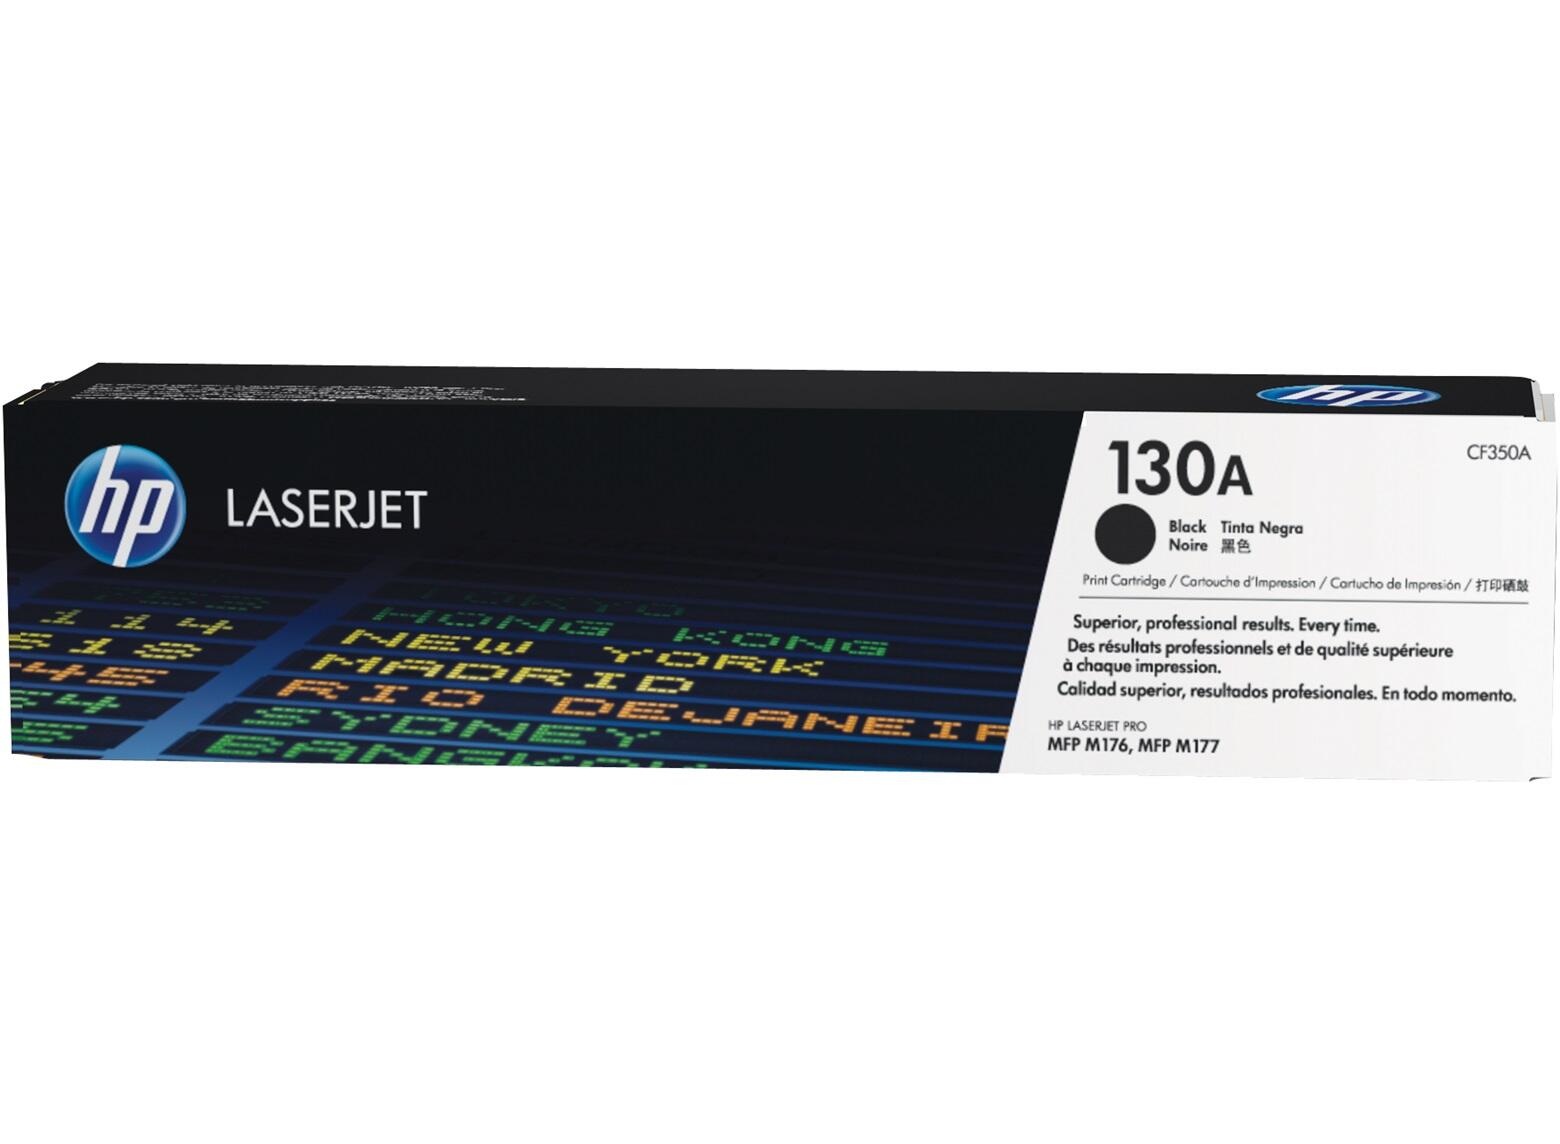 HP 130A for LaserJet Pro MFP M176/M177 series Toner Black toneris